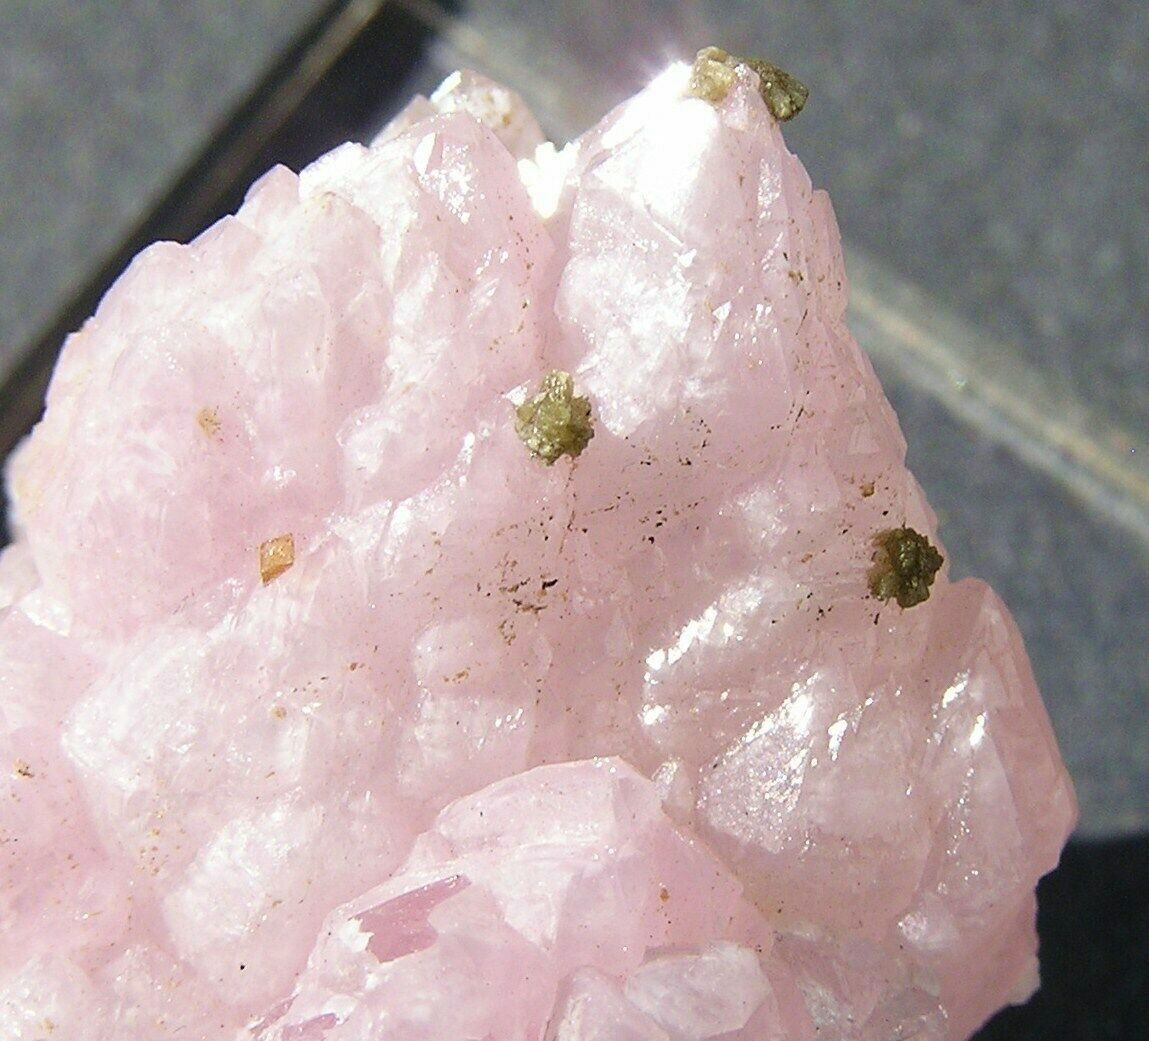 Розовый кварц переливается румянцем, пленяющим сердце каждого, кто его видит. Мягкий и женственный, этот кристалл излучает чистую любовь.-2